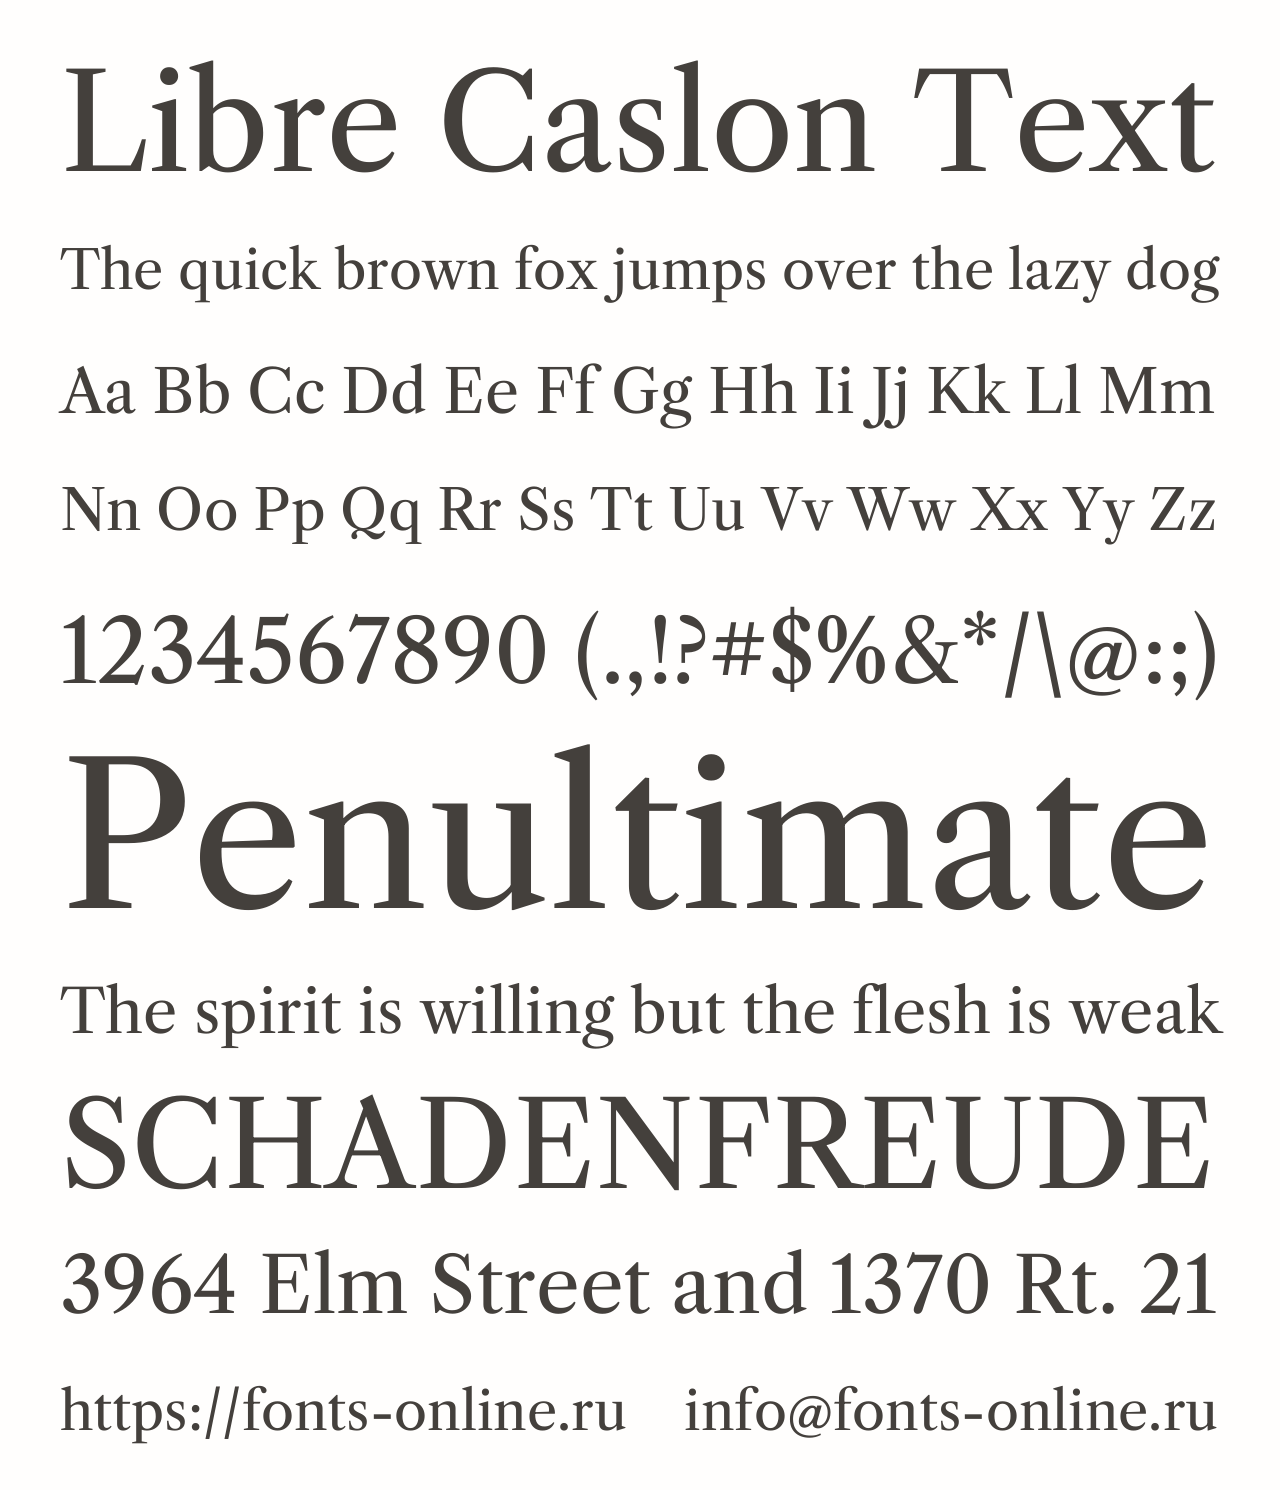 Шрифт Libre Caslon Text